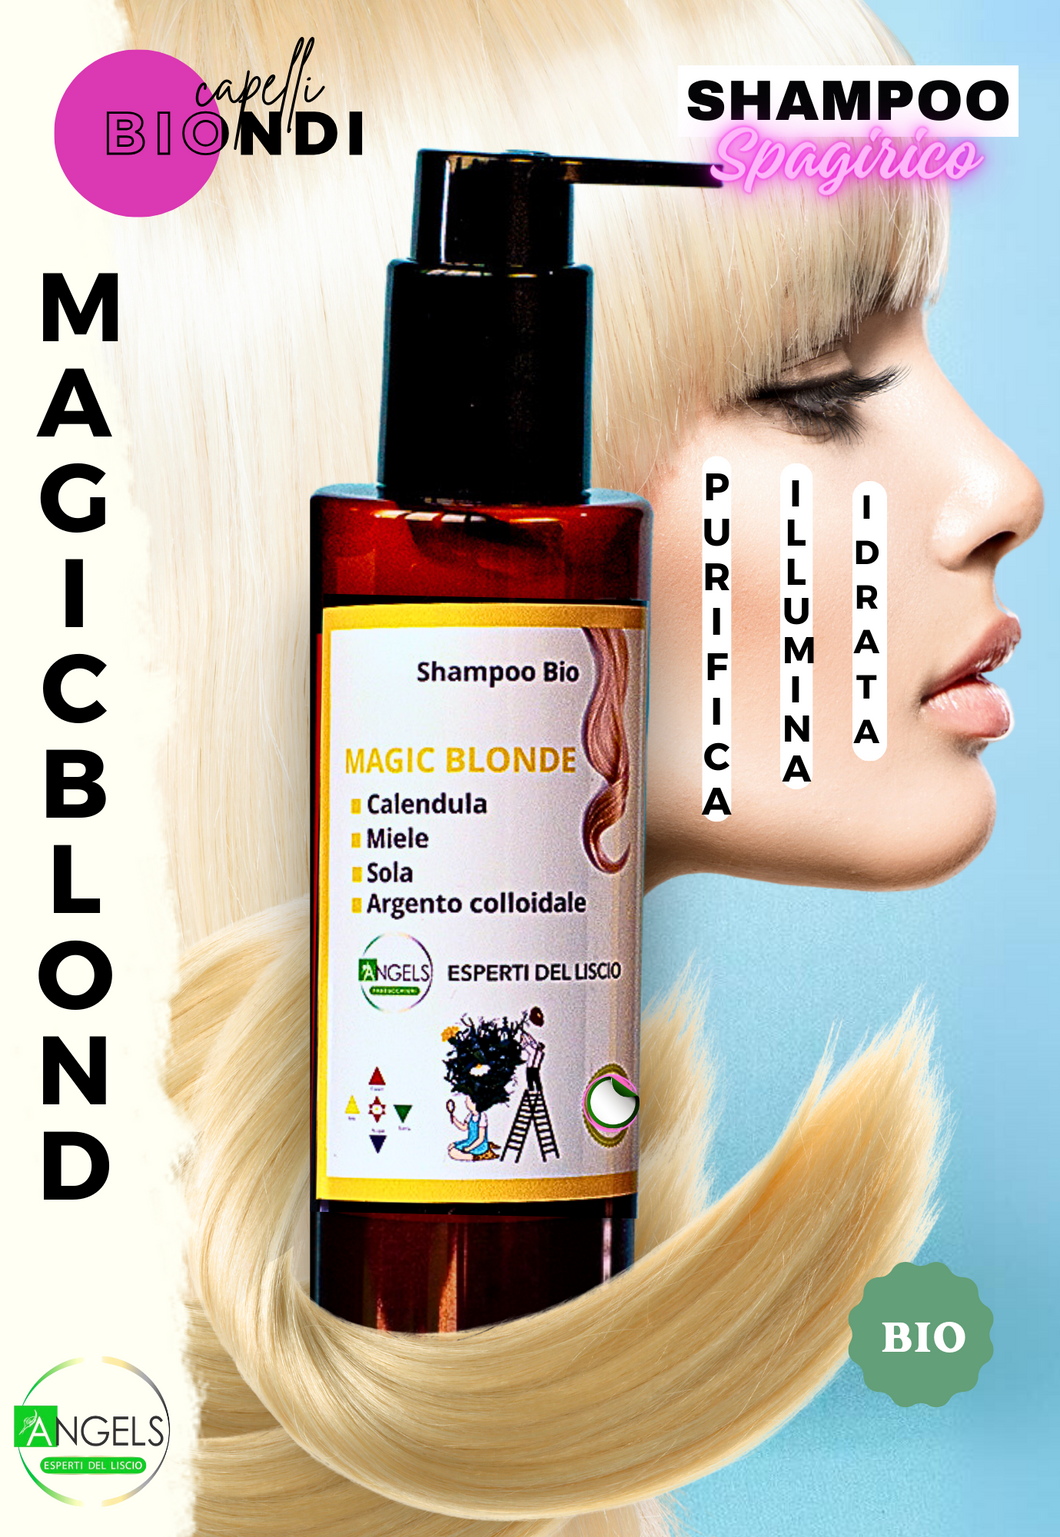 CAPELLI BIONDI - shampoo cheratinico - Studiato  per capelli  decolorati  garantisce un  colore  perfetto -  bio spagirico cheratinico MAGIC BLONDE